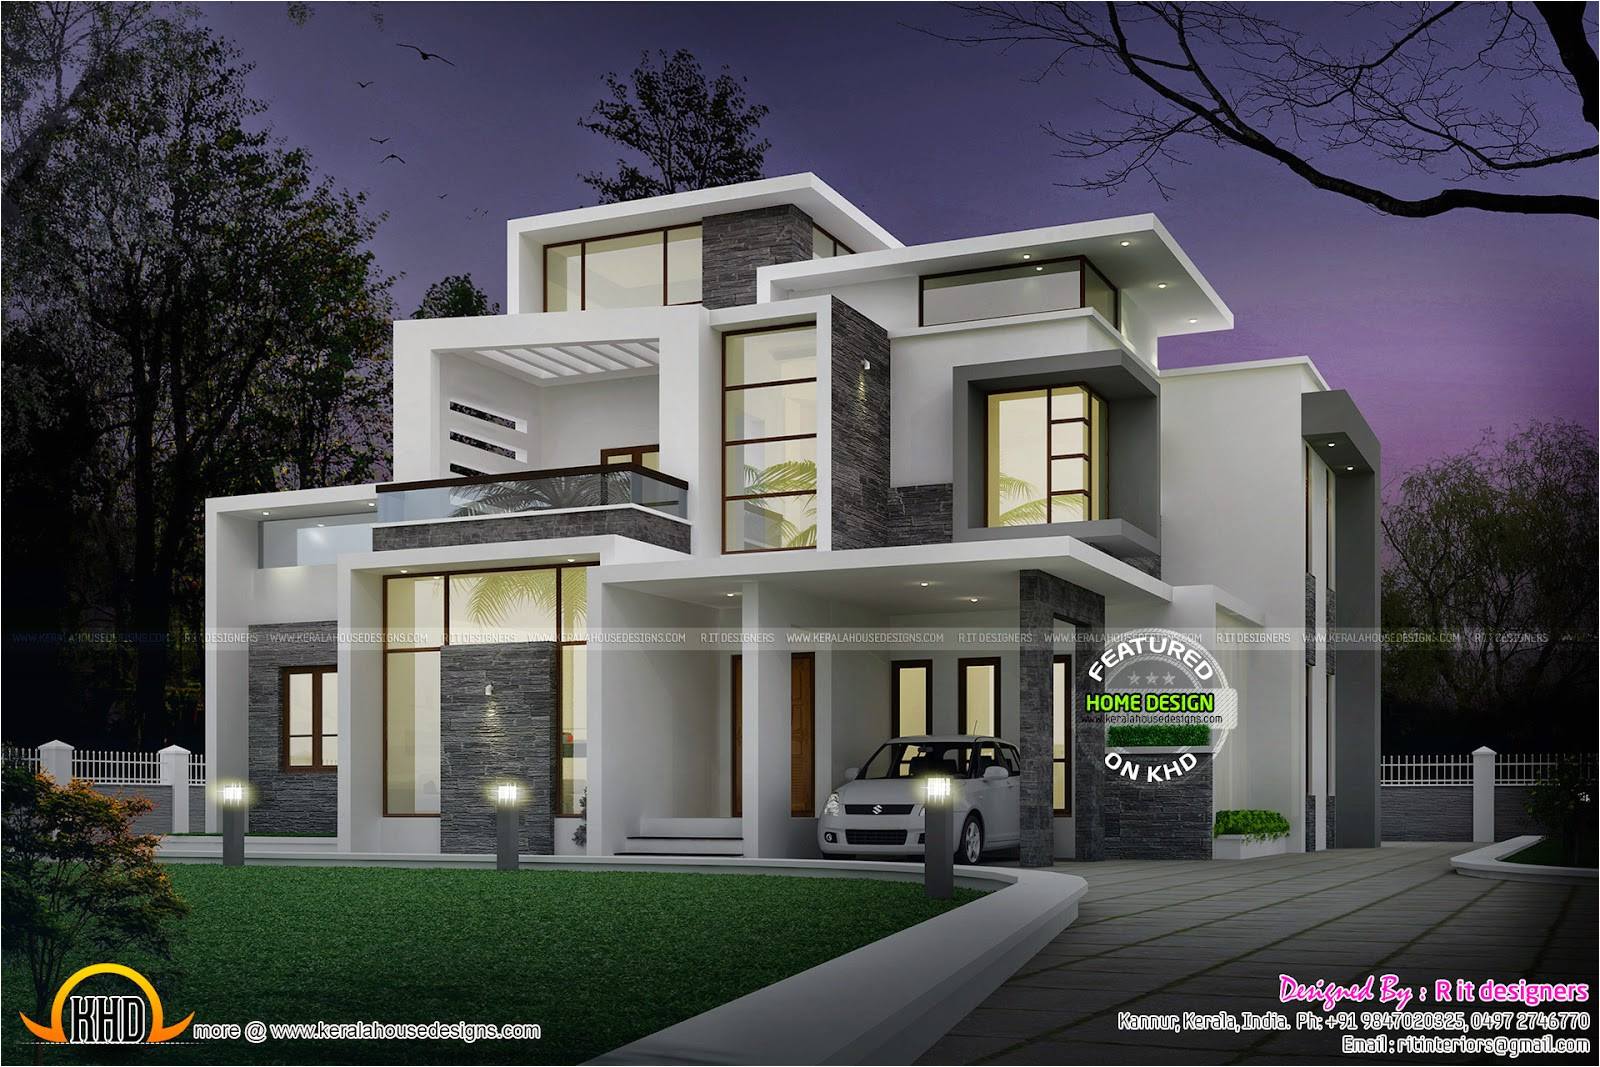 grand contemporary home design